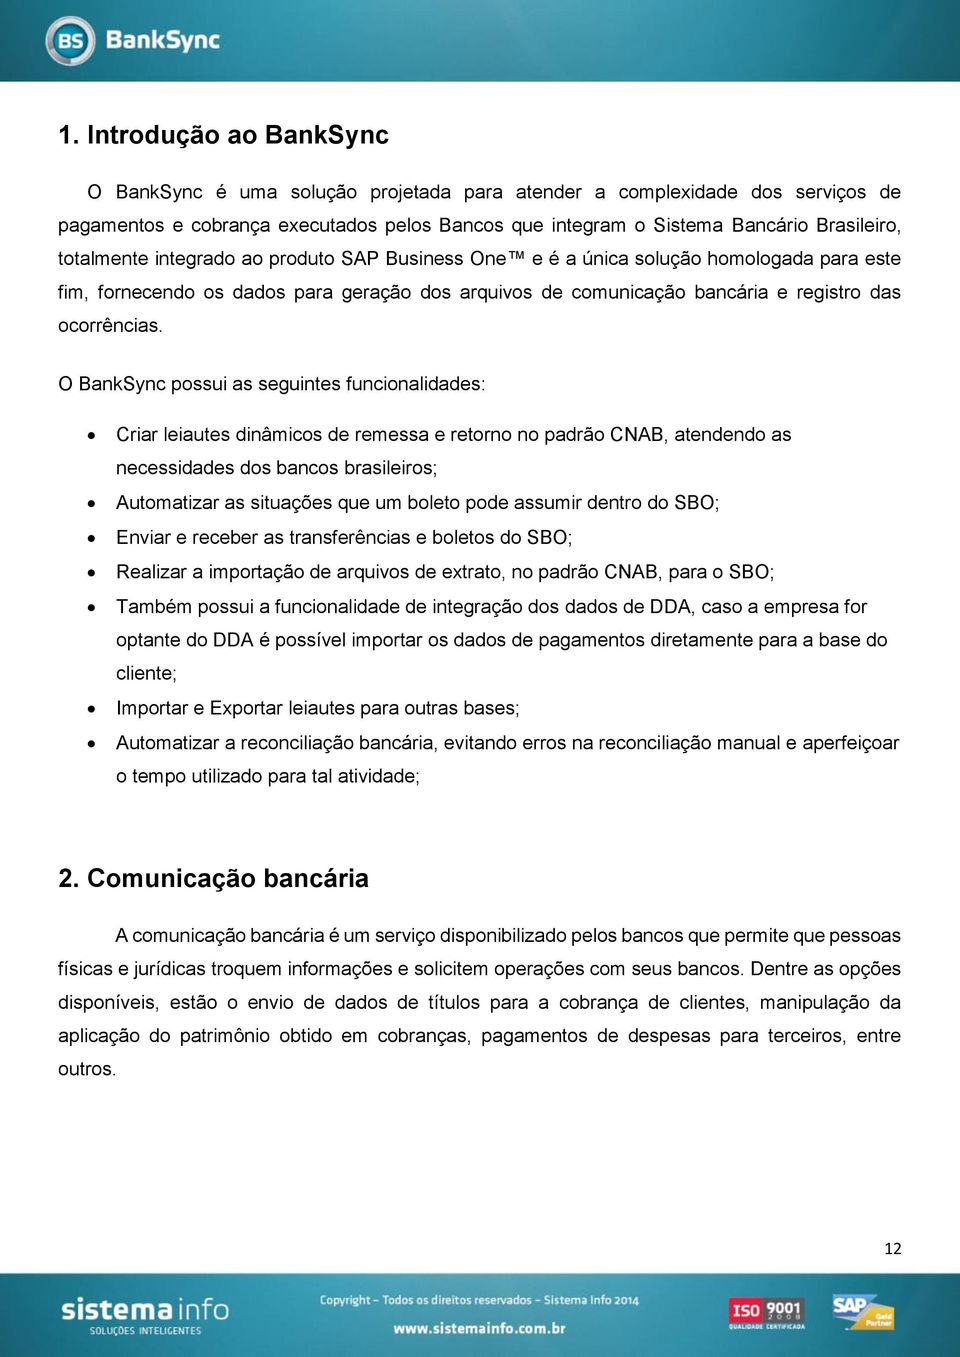 O BankSync possui as seguintes funcionalidades: Criar leiautes dinâmicos de remessa e retorno no padrão CNAB, atendendo as necessidades dos bancos brasileiros; Automatizar as situações que um boleto